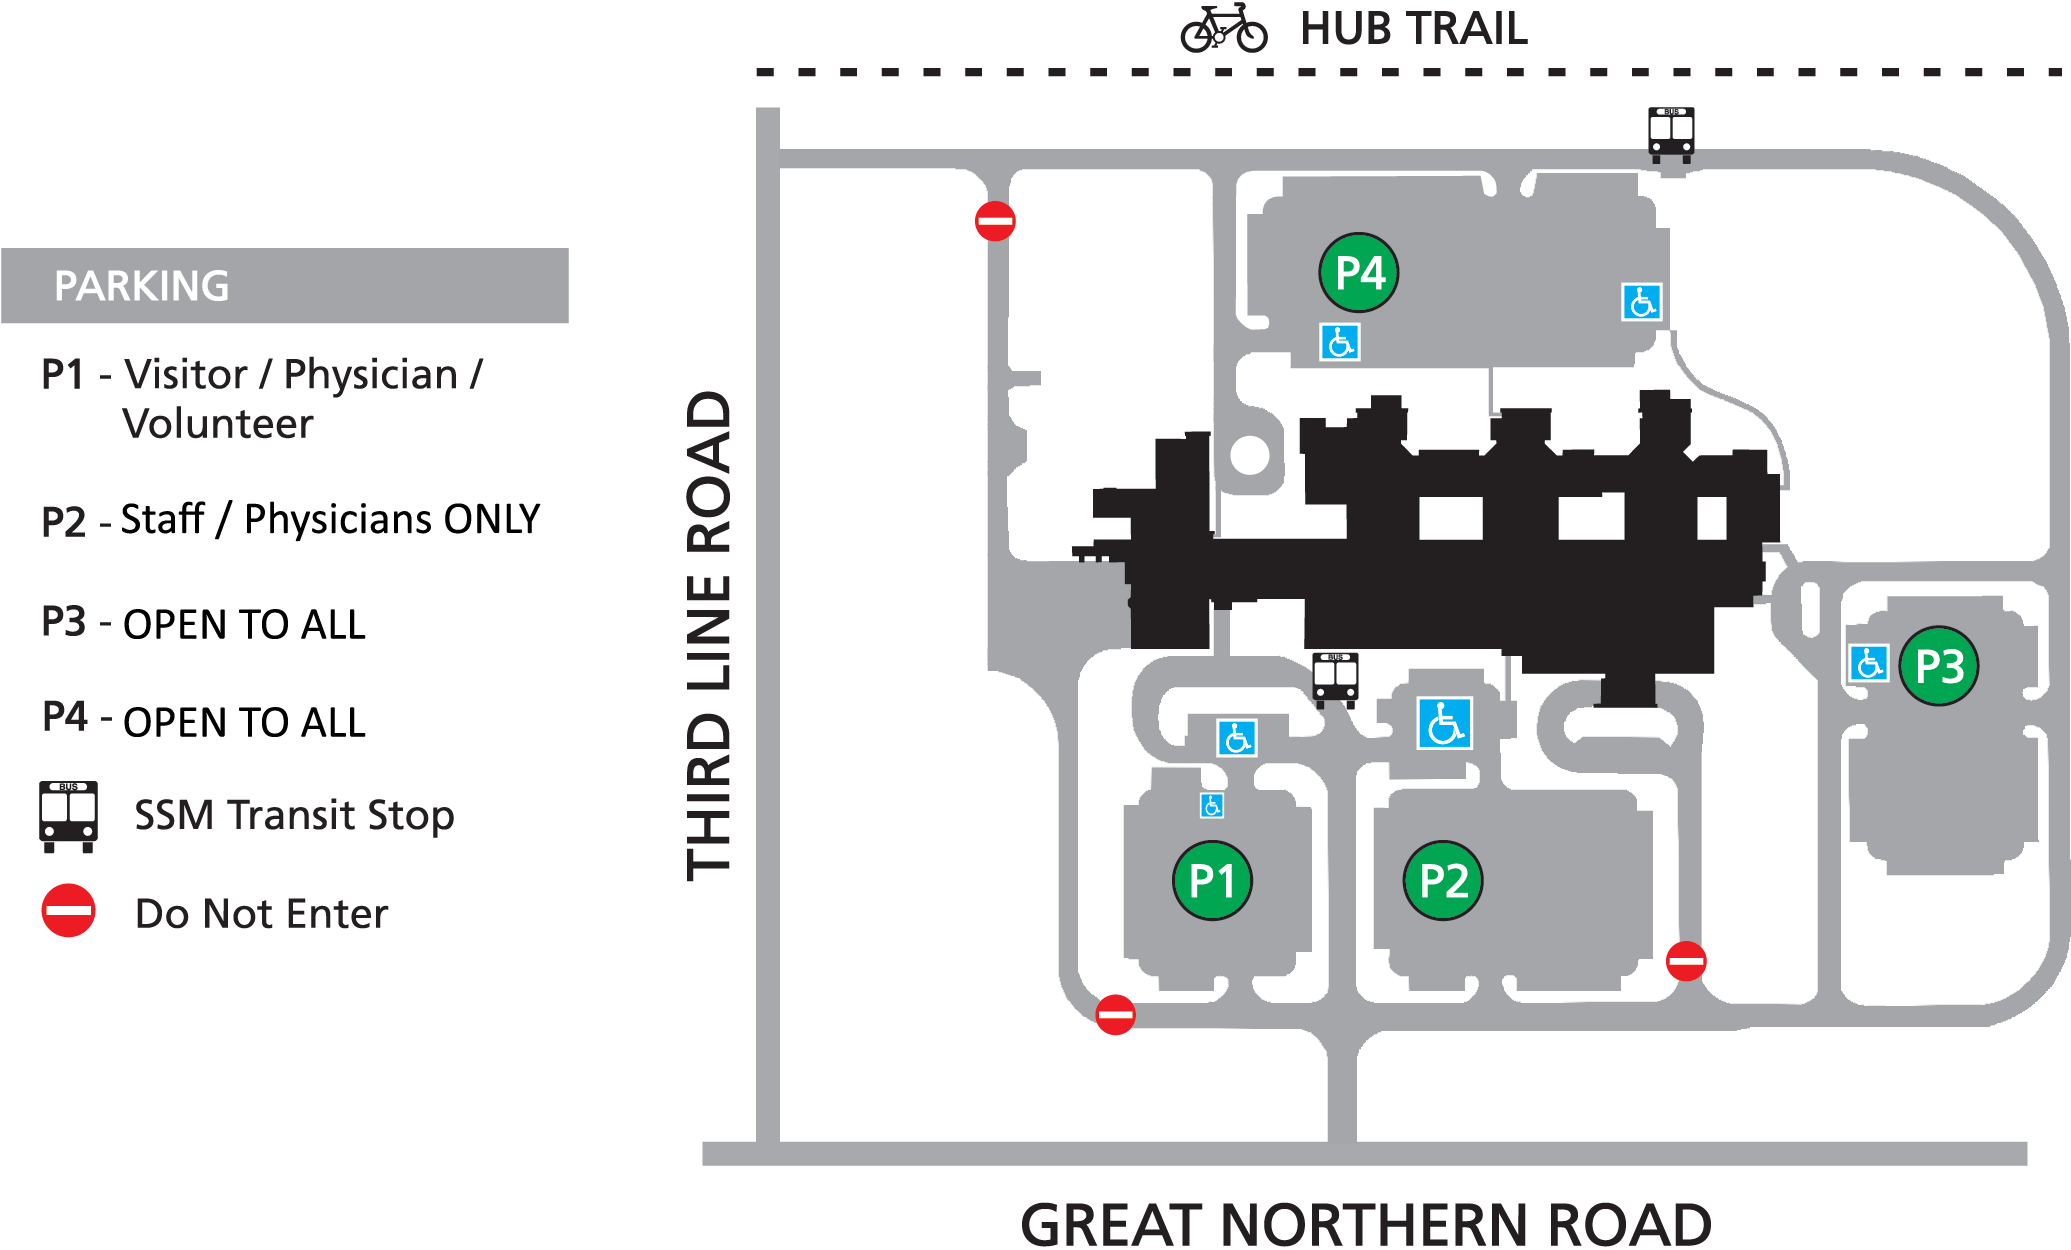 SAH Parking Map